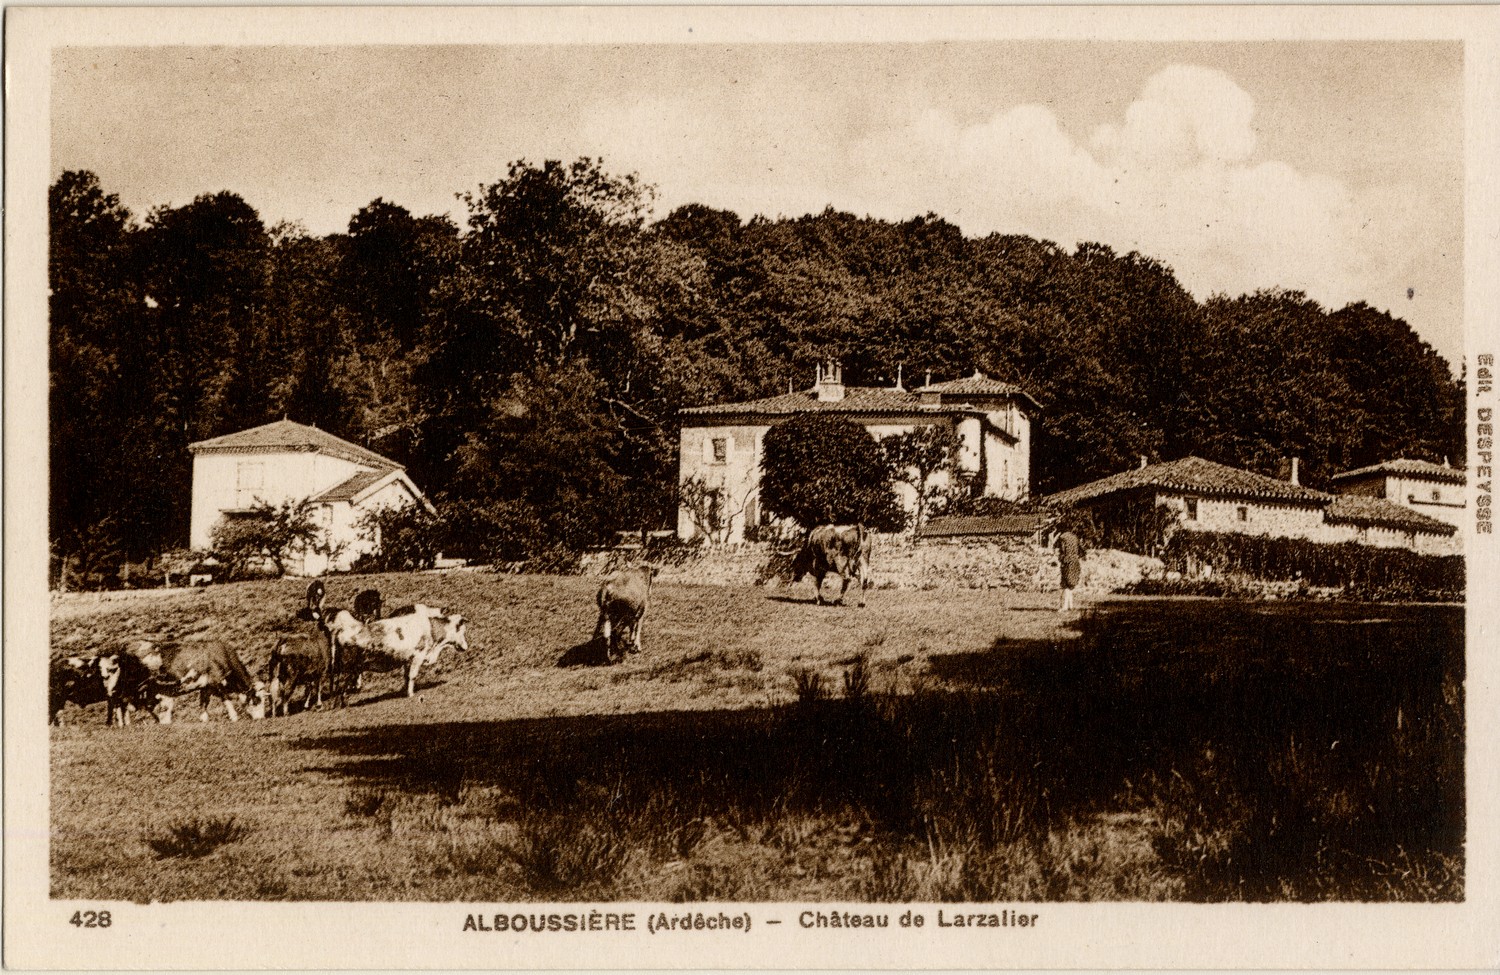 Alboussière (Ardèche) - Château de Larzalier